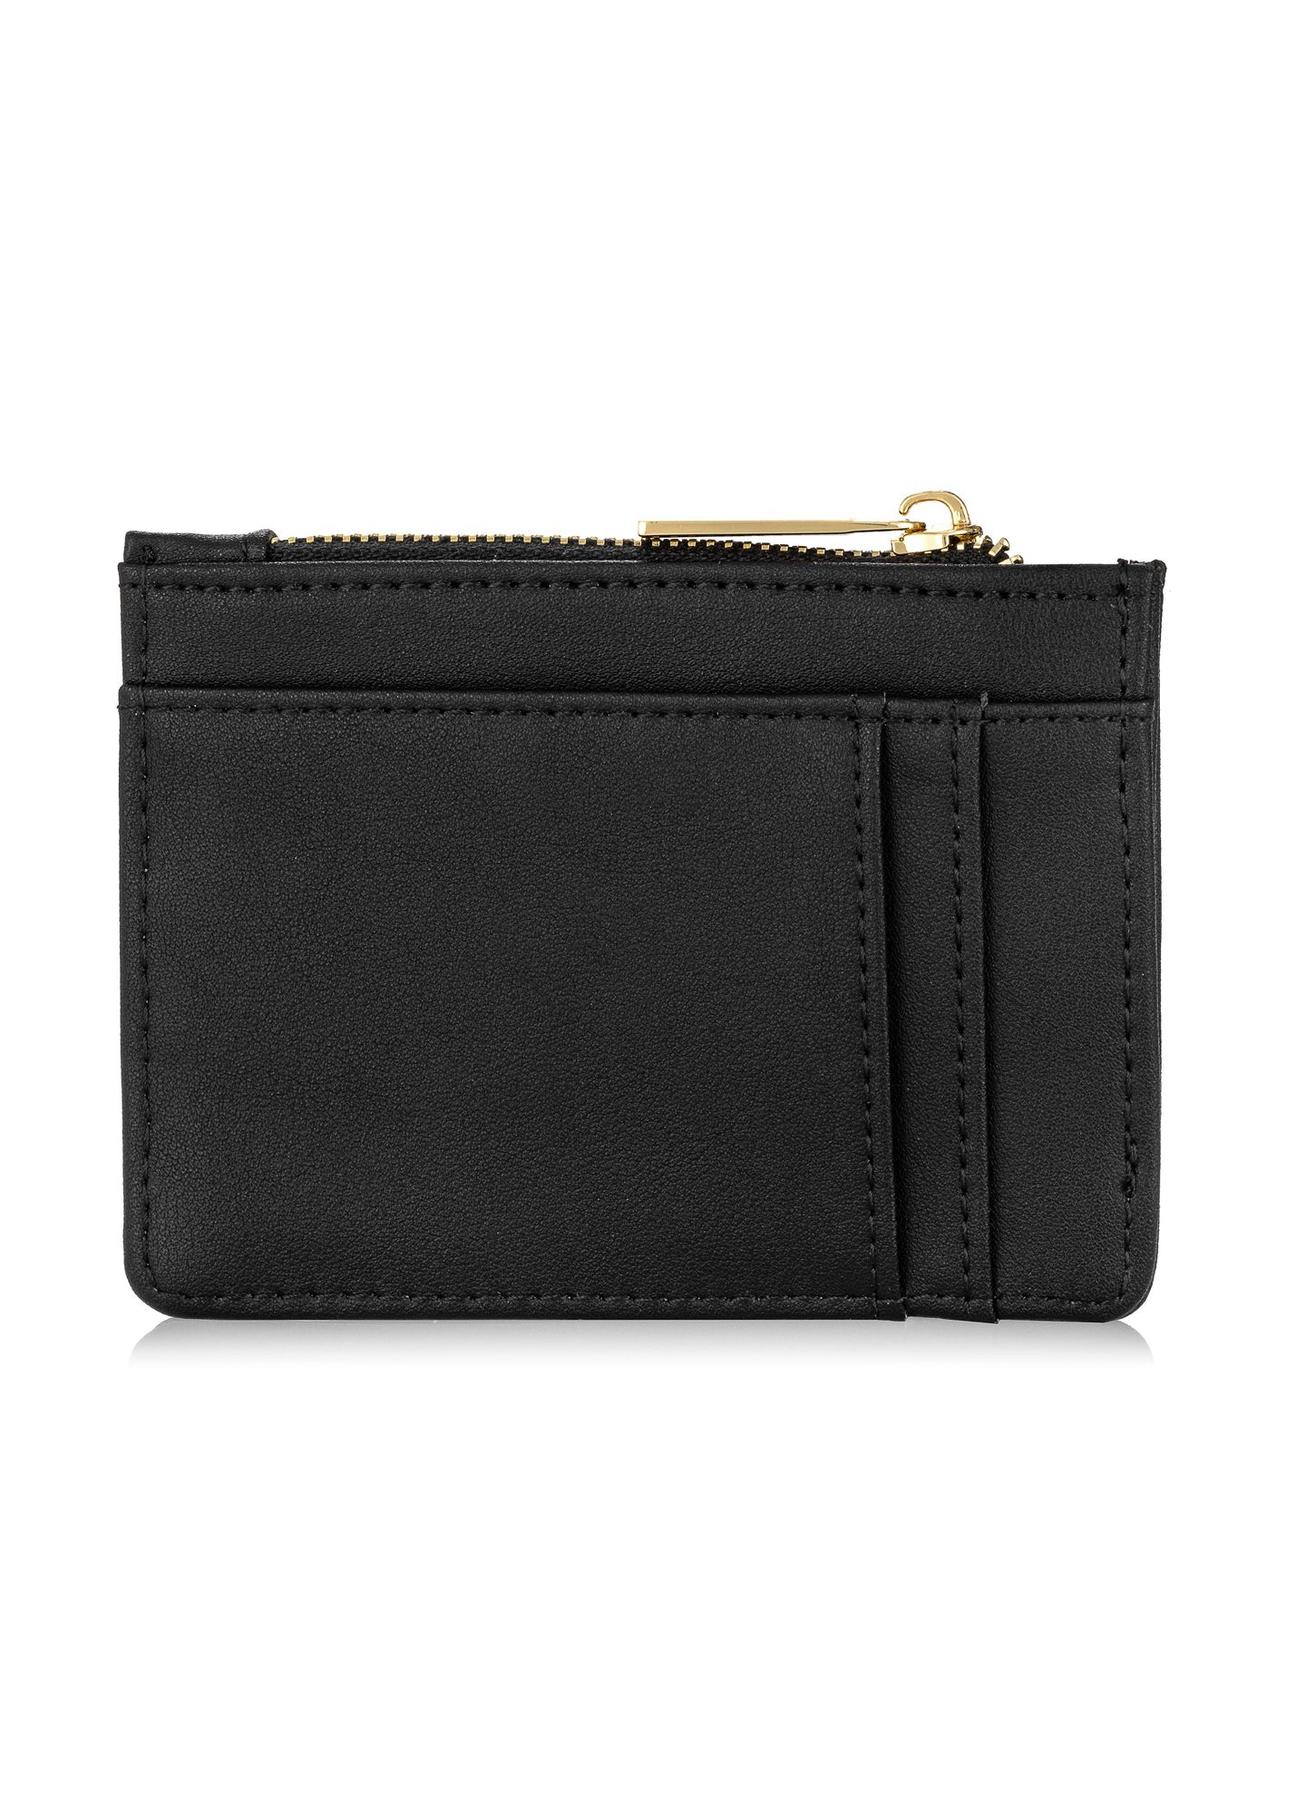 Mały płaski czarny portfel damski POREC-0367-99(W24)